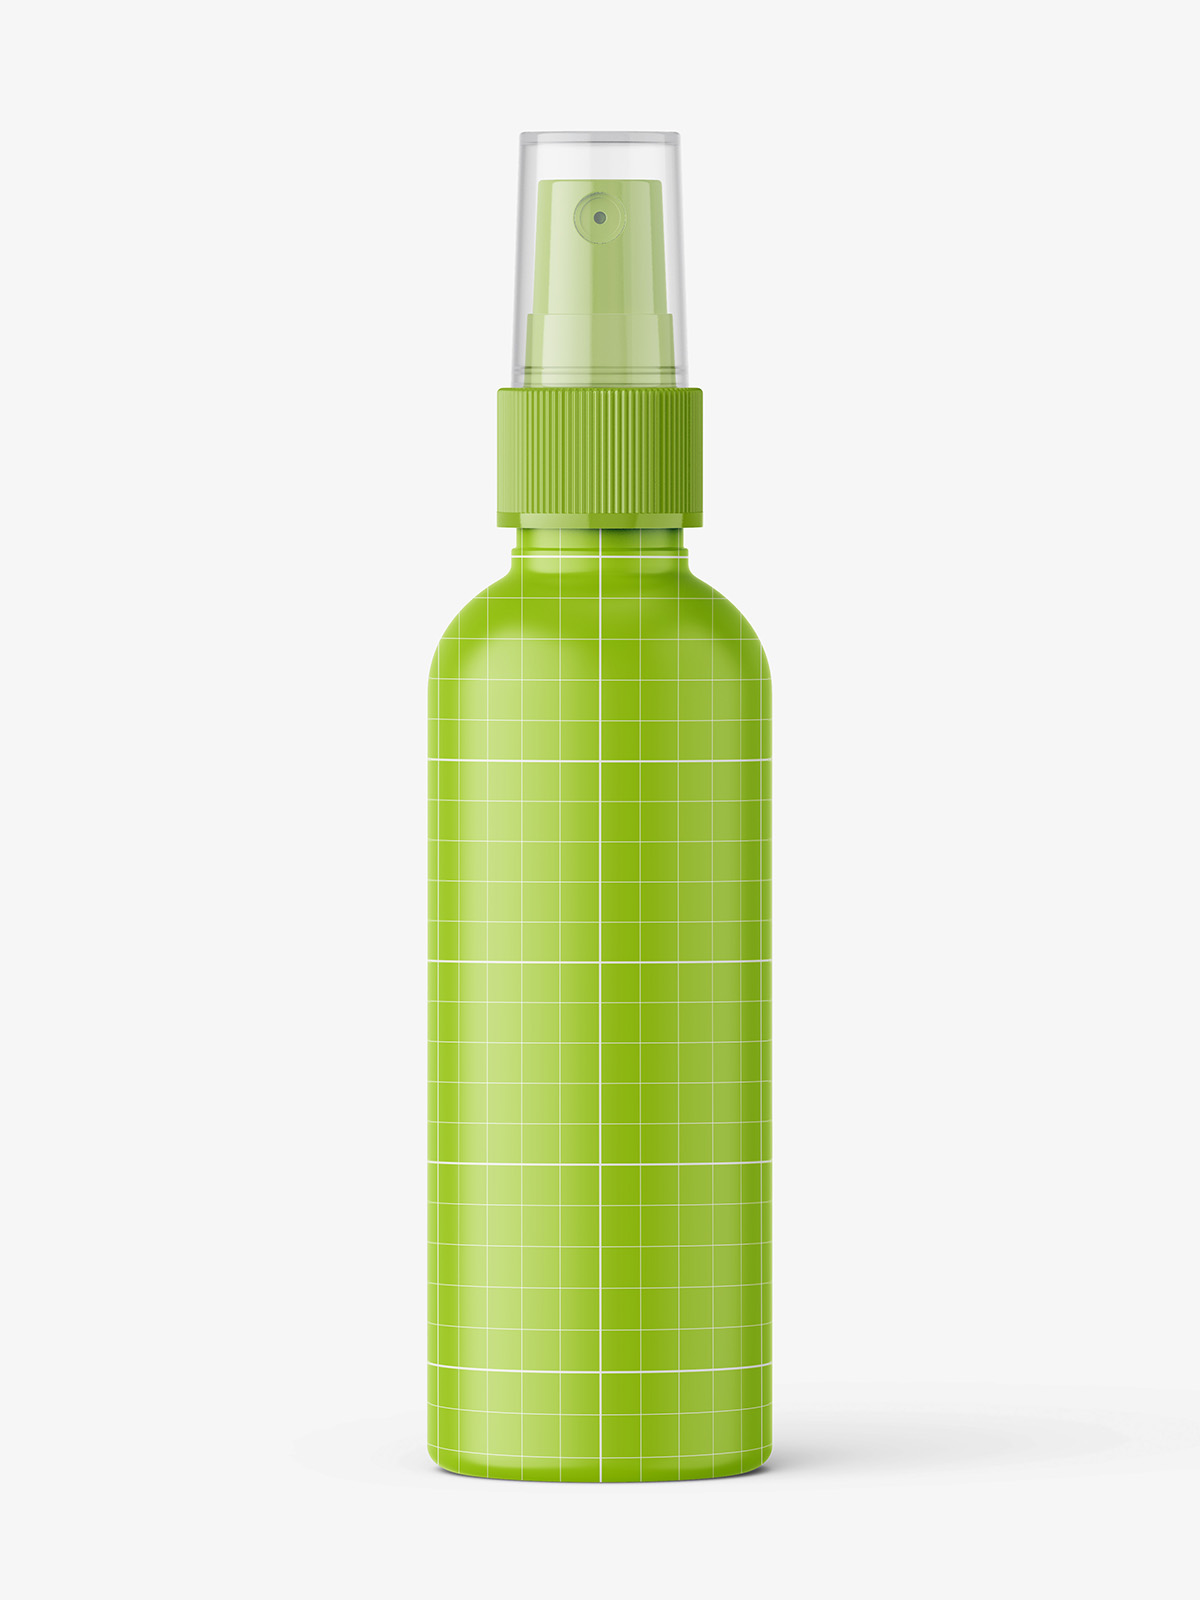 Download Amber mist spray bottle mockup - Smarty Mockups